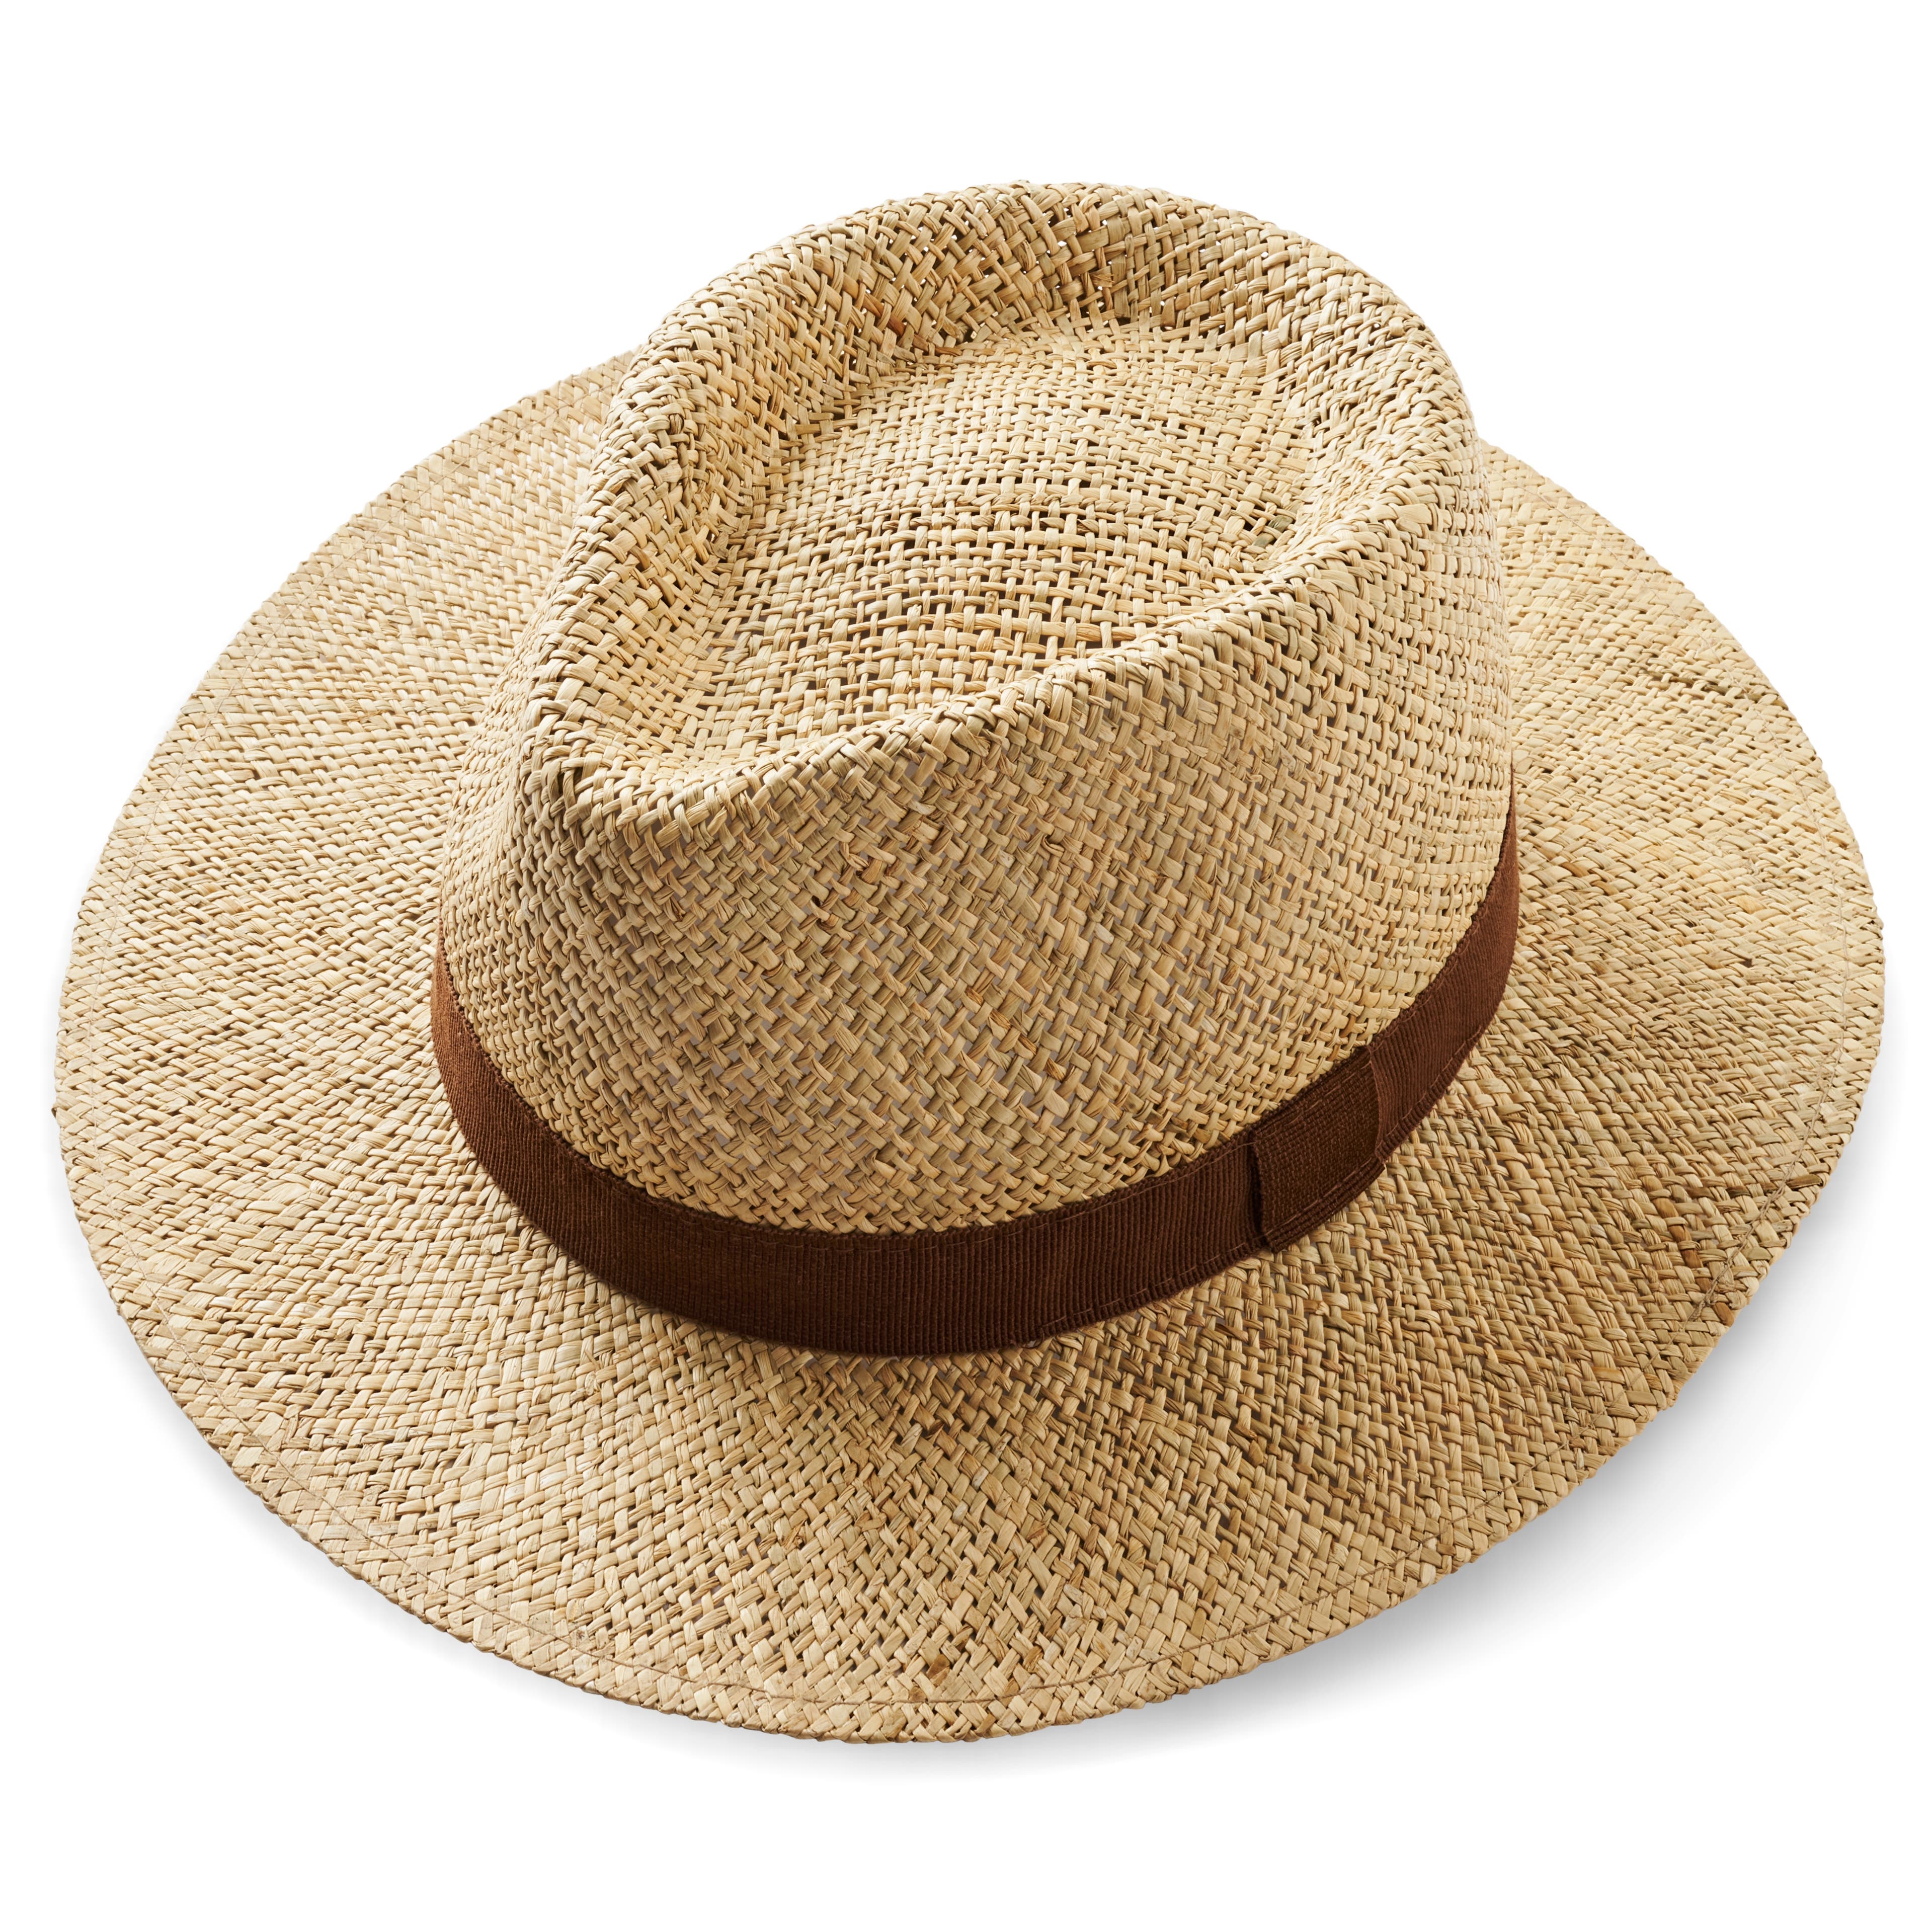 Sombrero Panamá de paja natural con cinta marrón